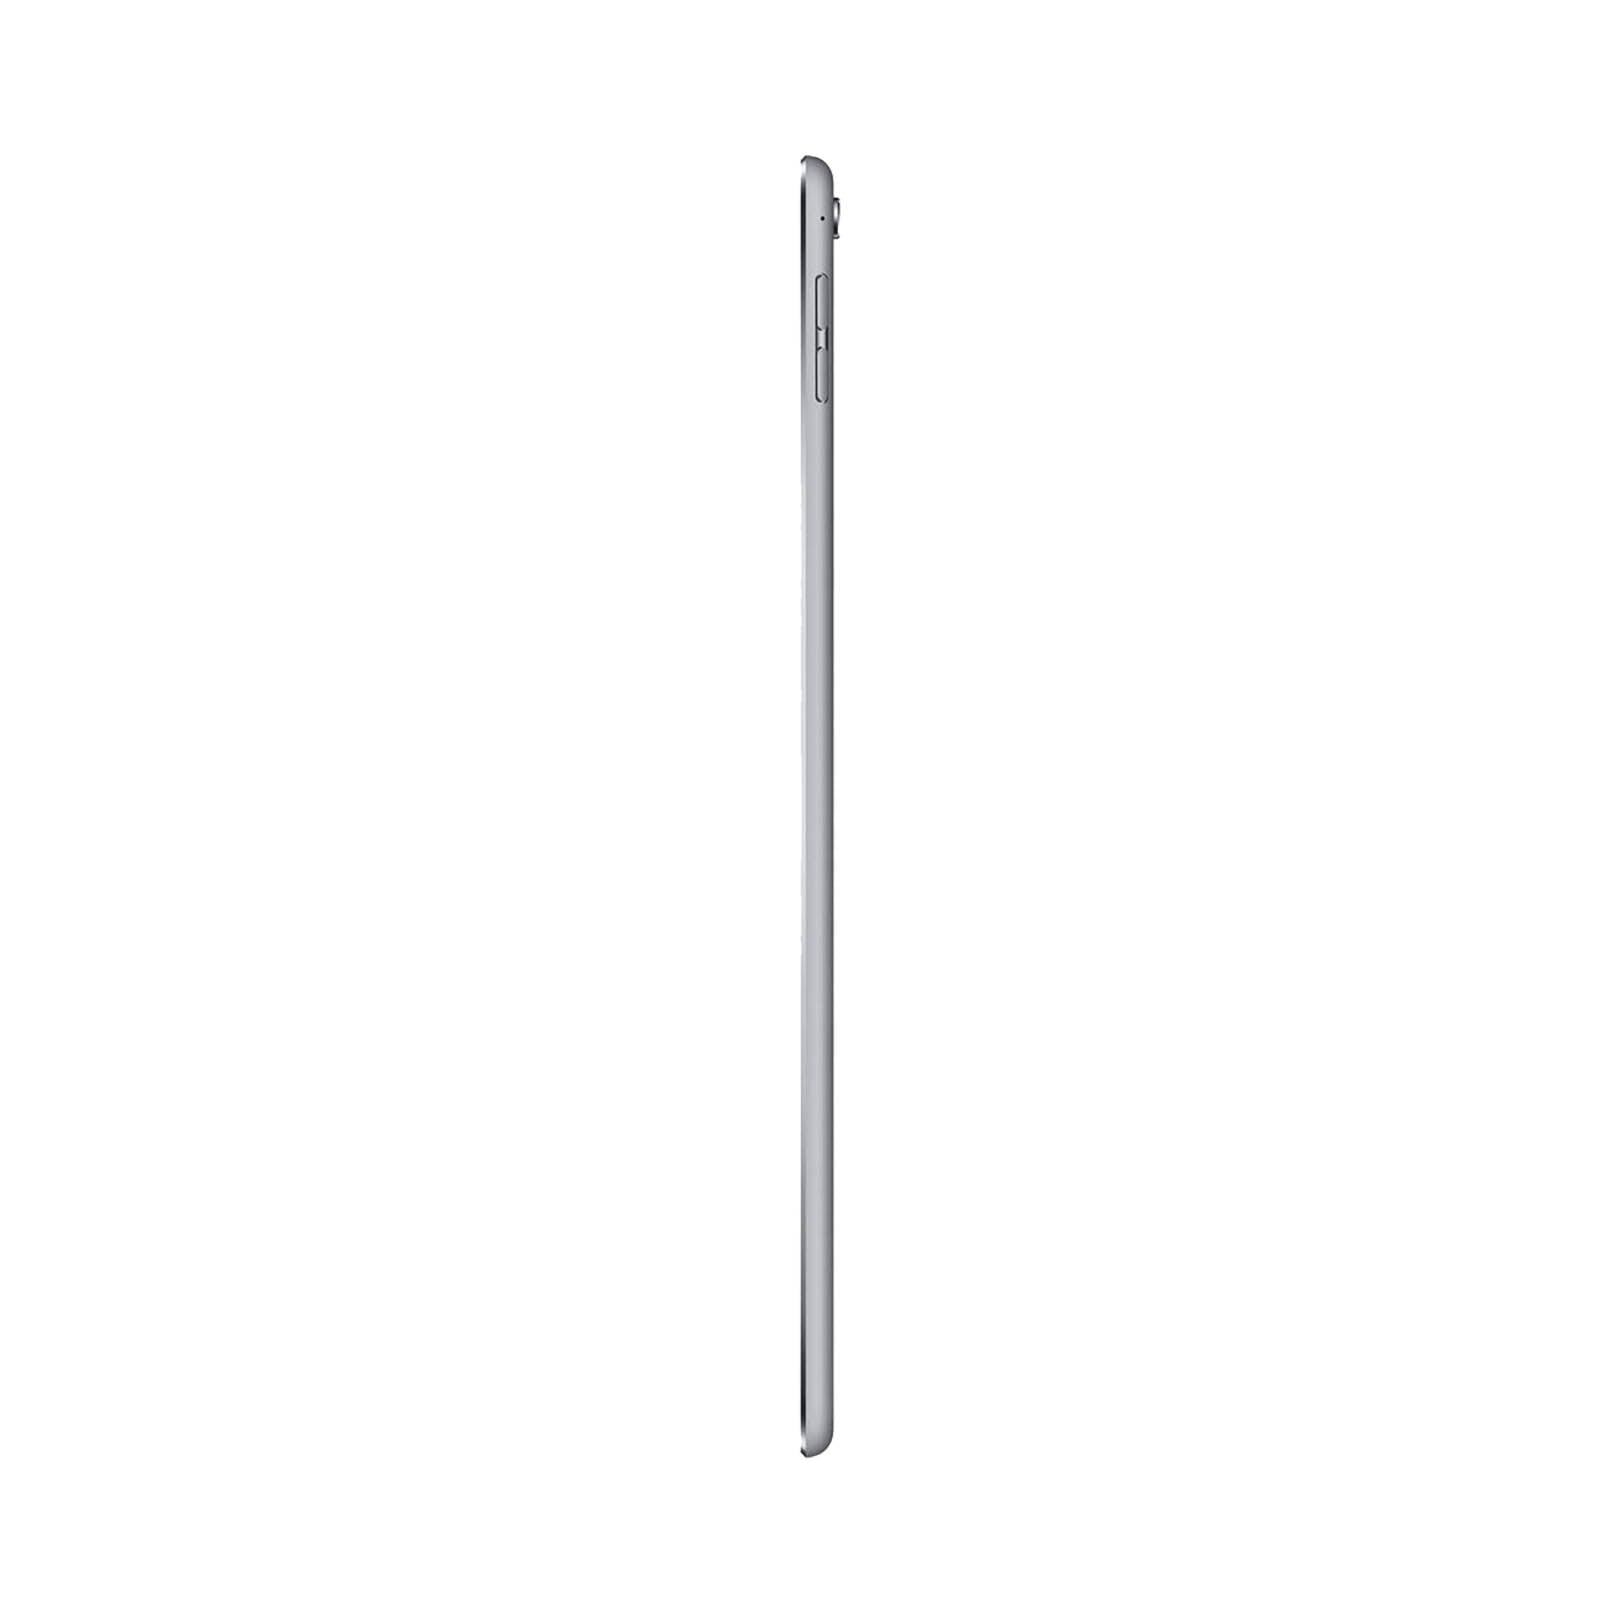 Apple iPad Pro 9.7" 32GB Space Grey Very Good - WiFi